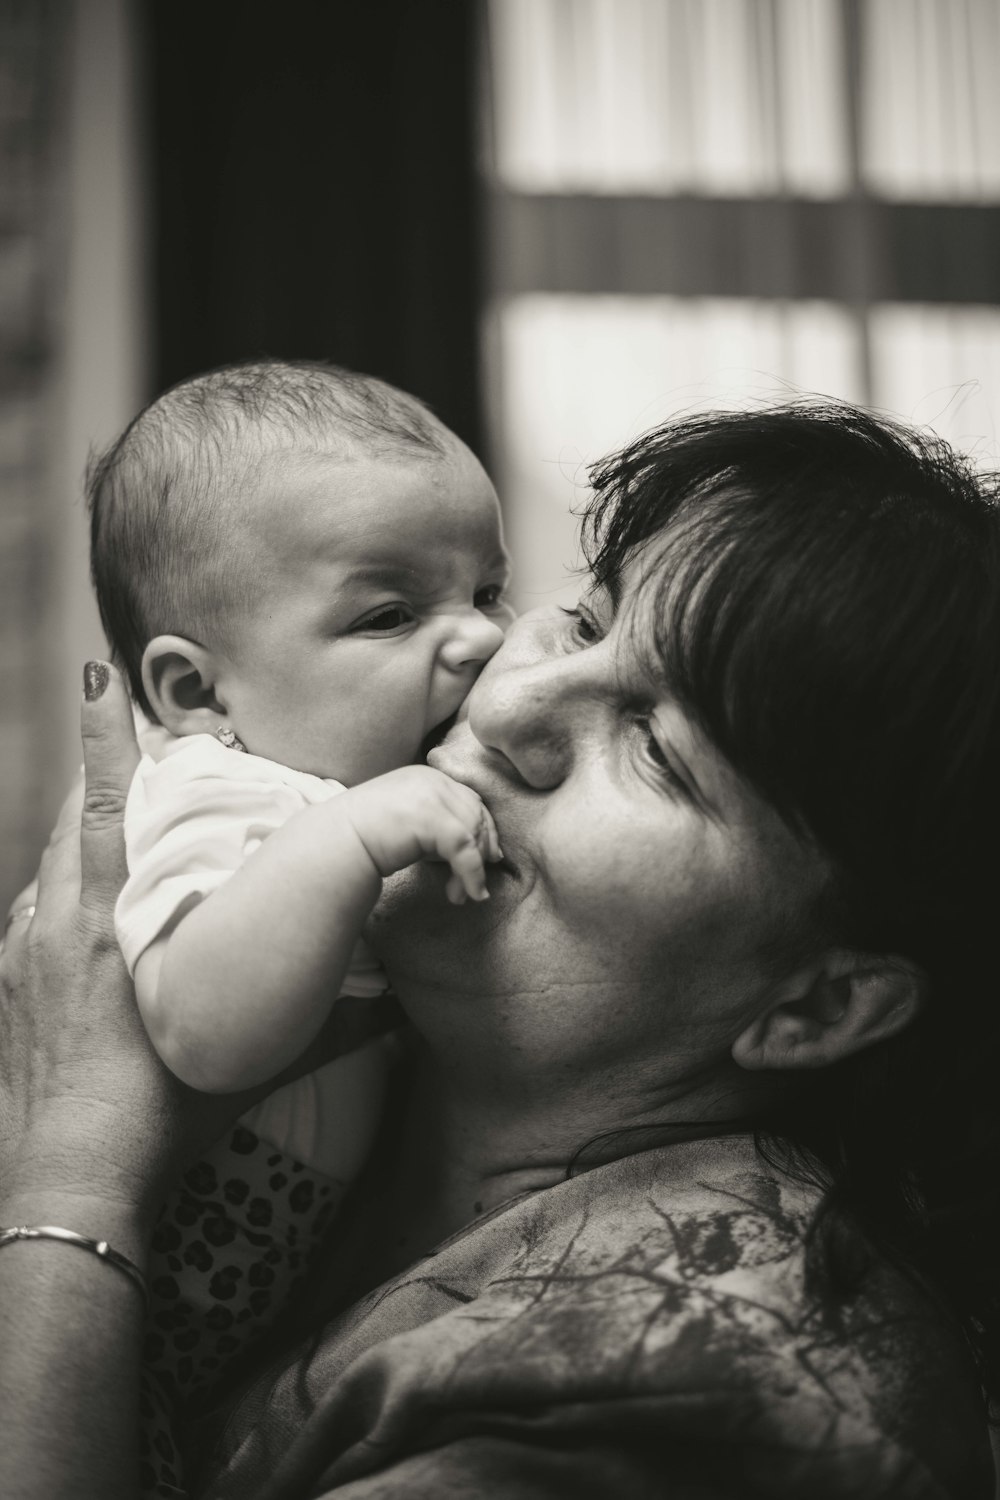 아기에게 키스하는 여자의 그레이스케일 사진